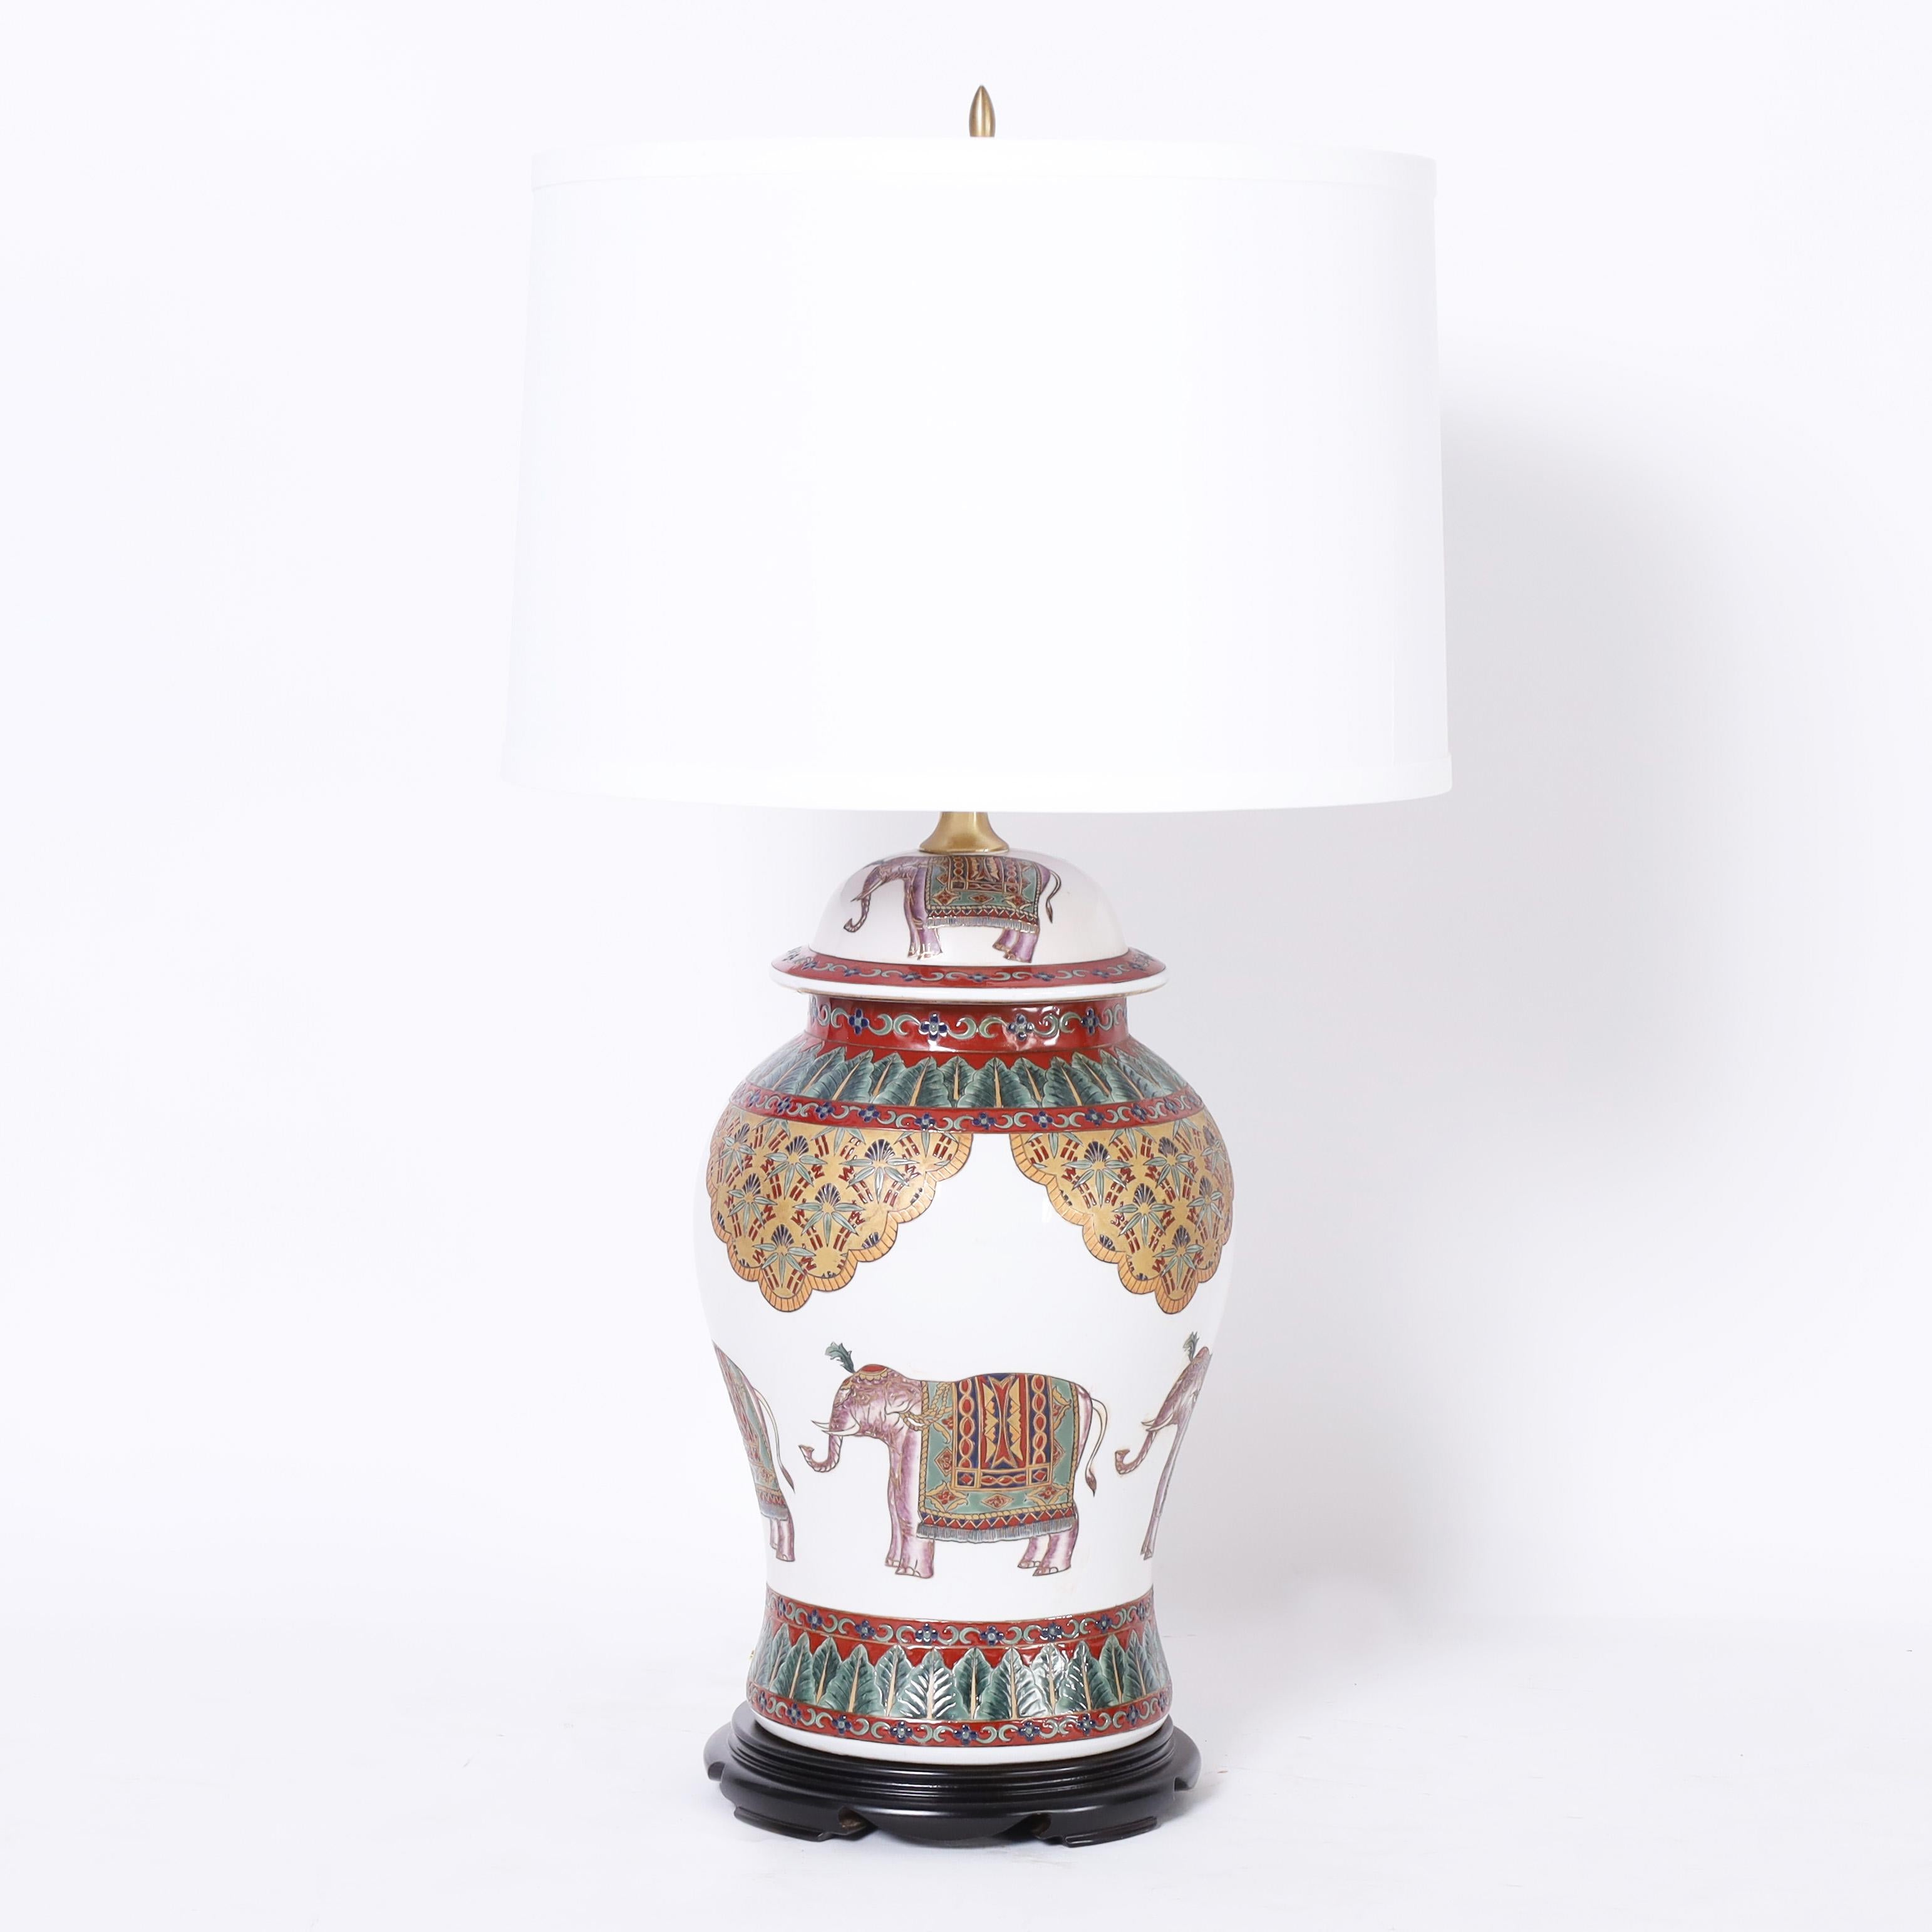 Paire de lampes de table en porcelaine de style colonial britannique, de forme classique de pot de gingembre, décorées à la main d'éléphants et de motifs floraux. Signé Oriental Accent sur les fonds.